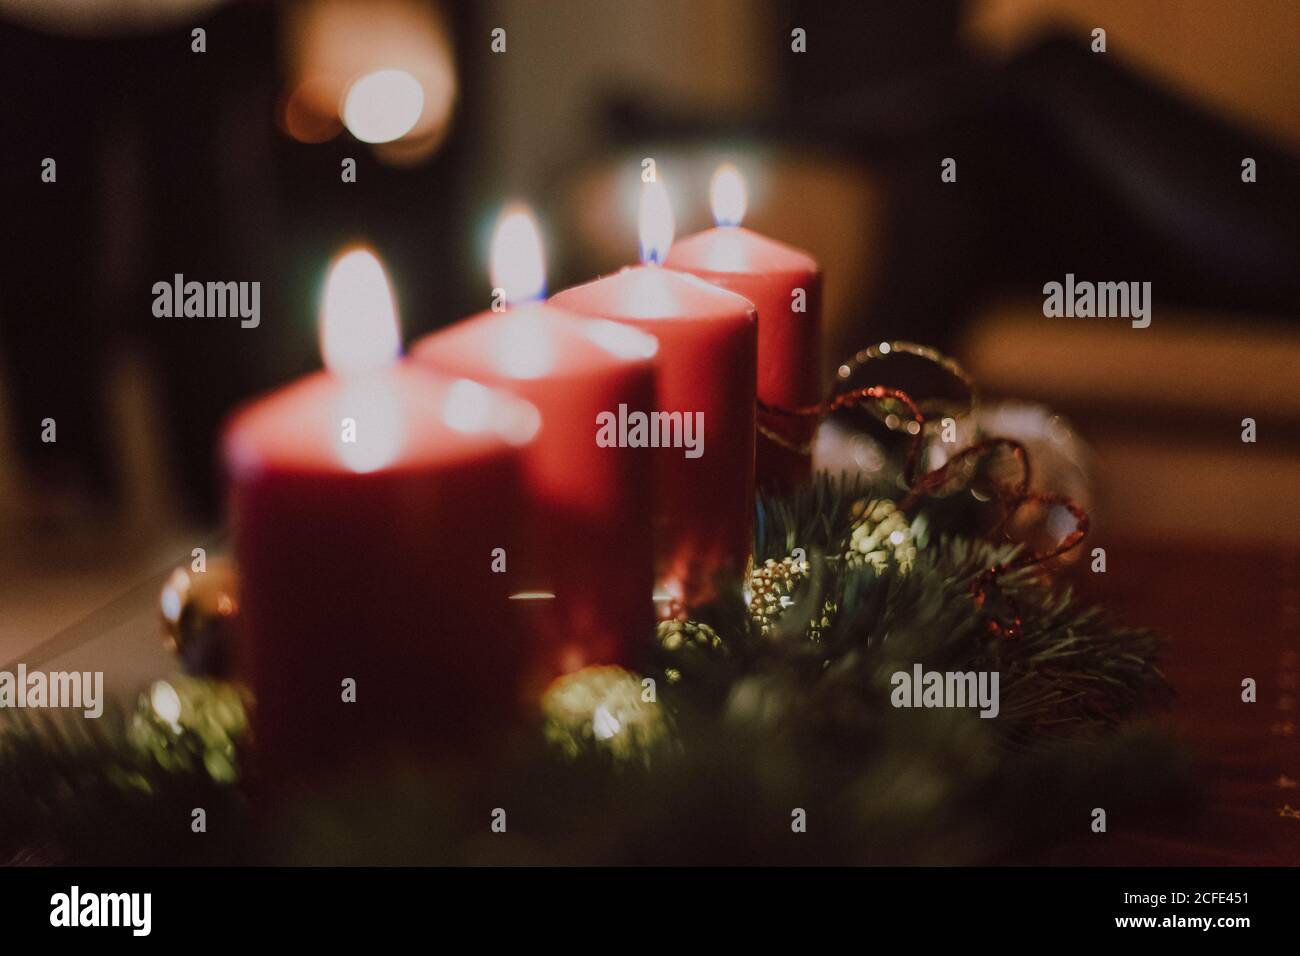 Deutschland, Bayern, Weihnachten, Stille Nacht, 24. Dezember, Weihnachtsfest, 4 brennende Kerzen Stockfoto